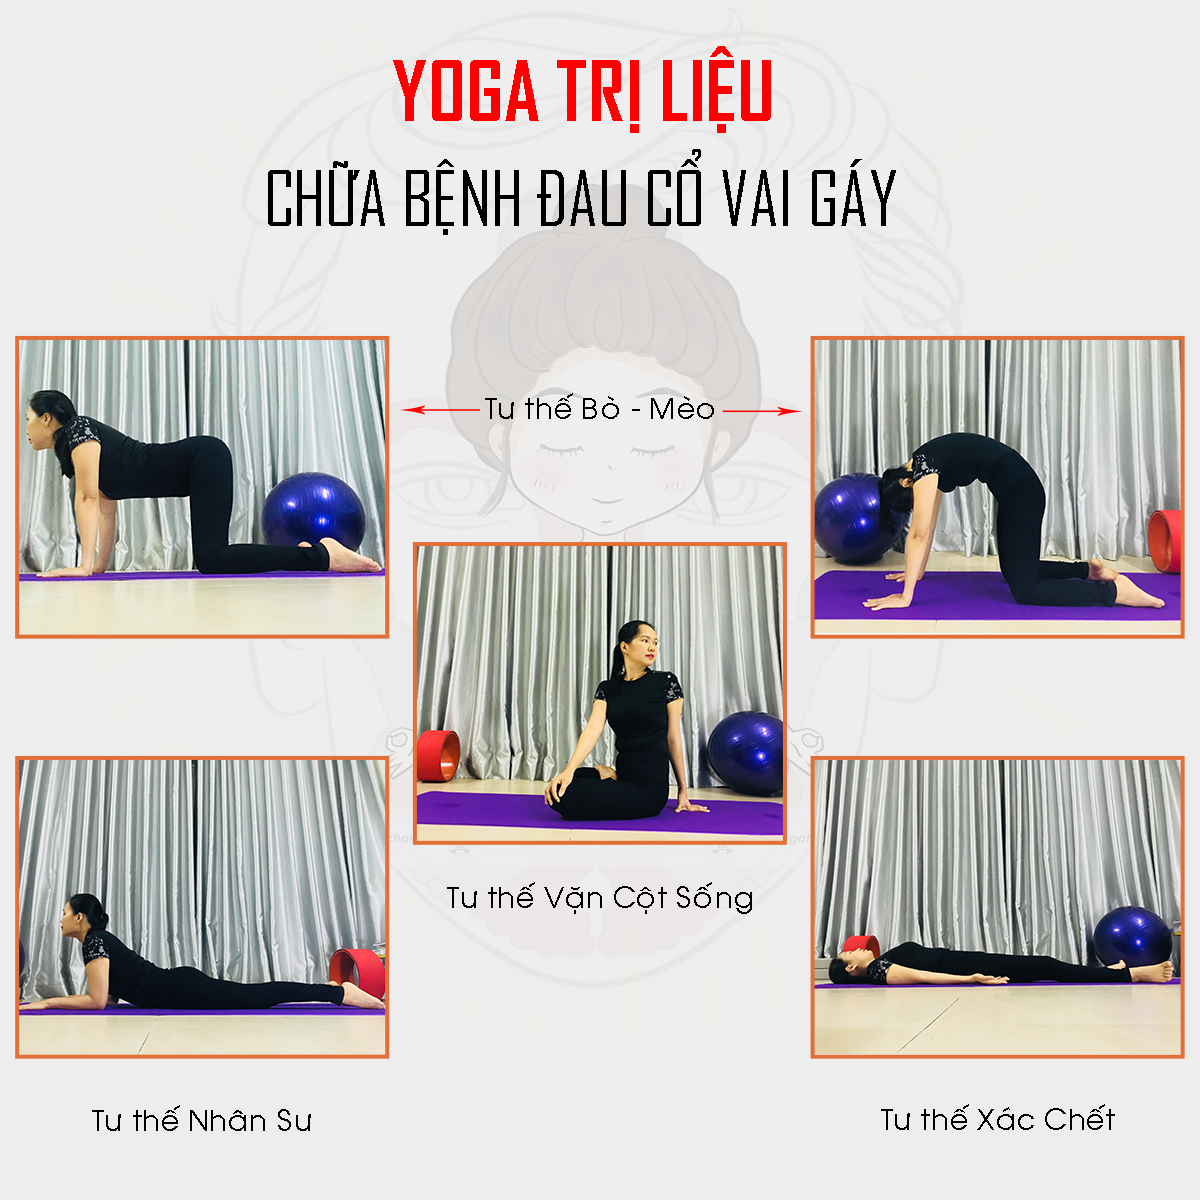 Hướng dẫn 5 động tác Yoga trị liệu bệnh đau cổ vai gáy hữu hiệu.